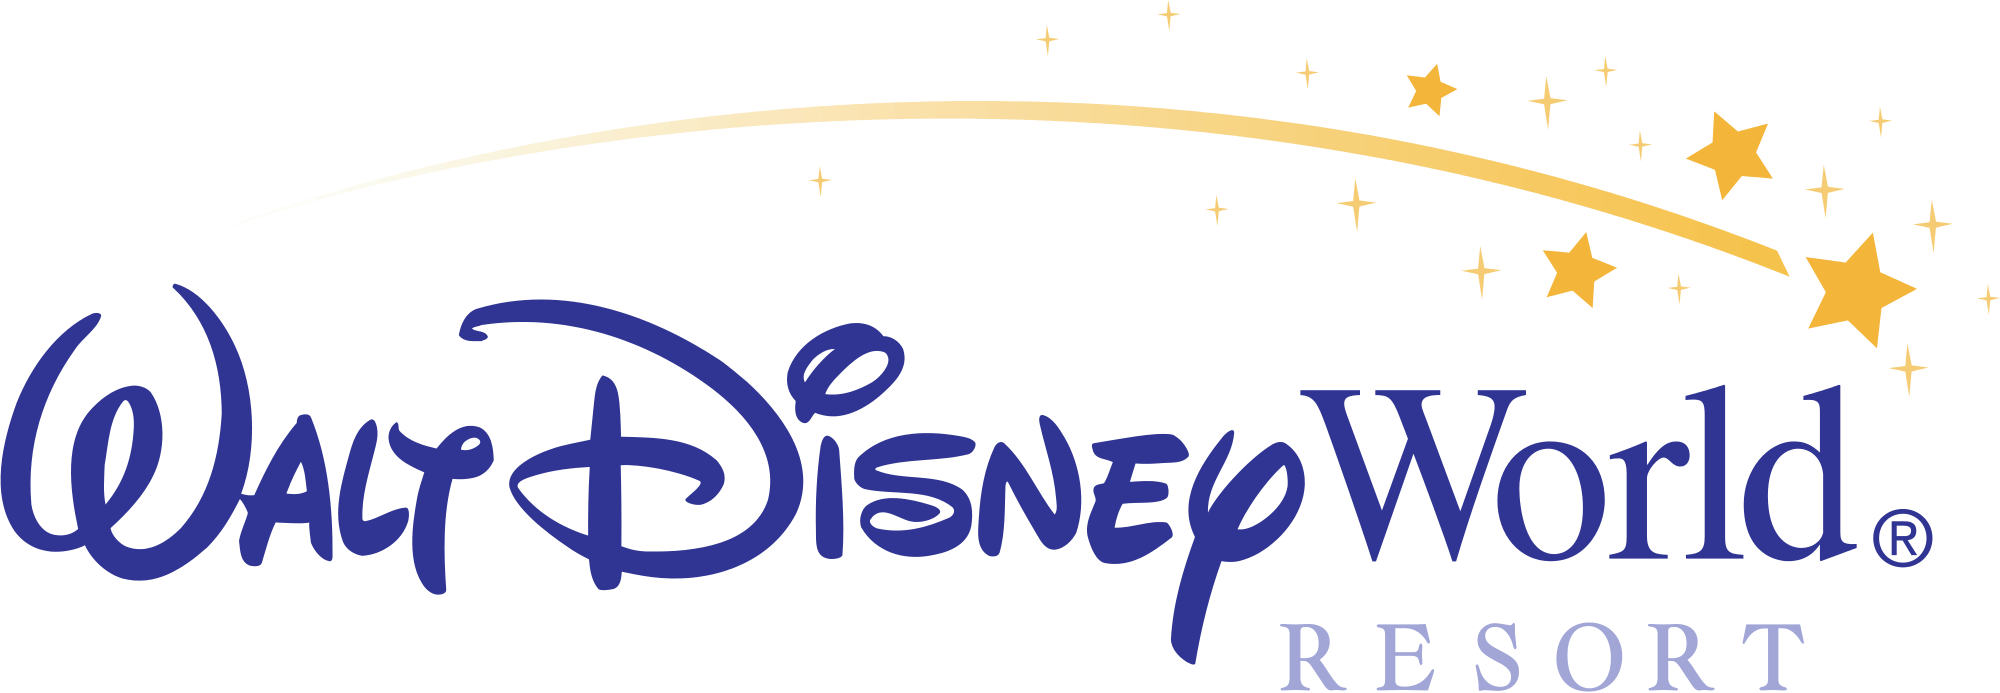 New Walt Disney World Logo - Walt Disney Parks and Resorts | Disney Wiki | FANDOM powered by Wikia